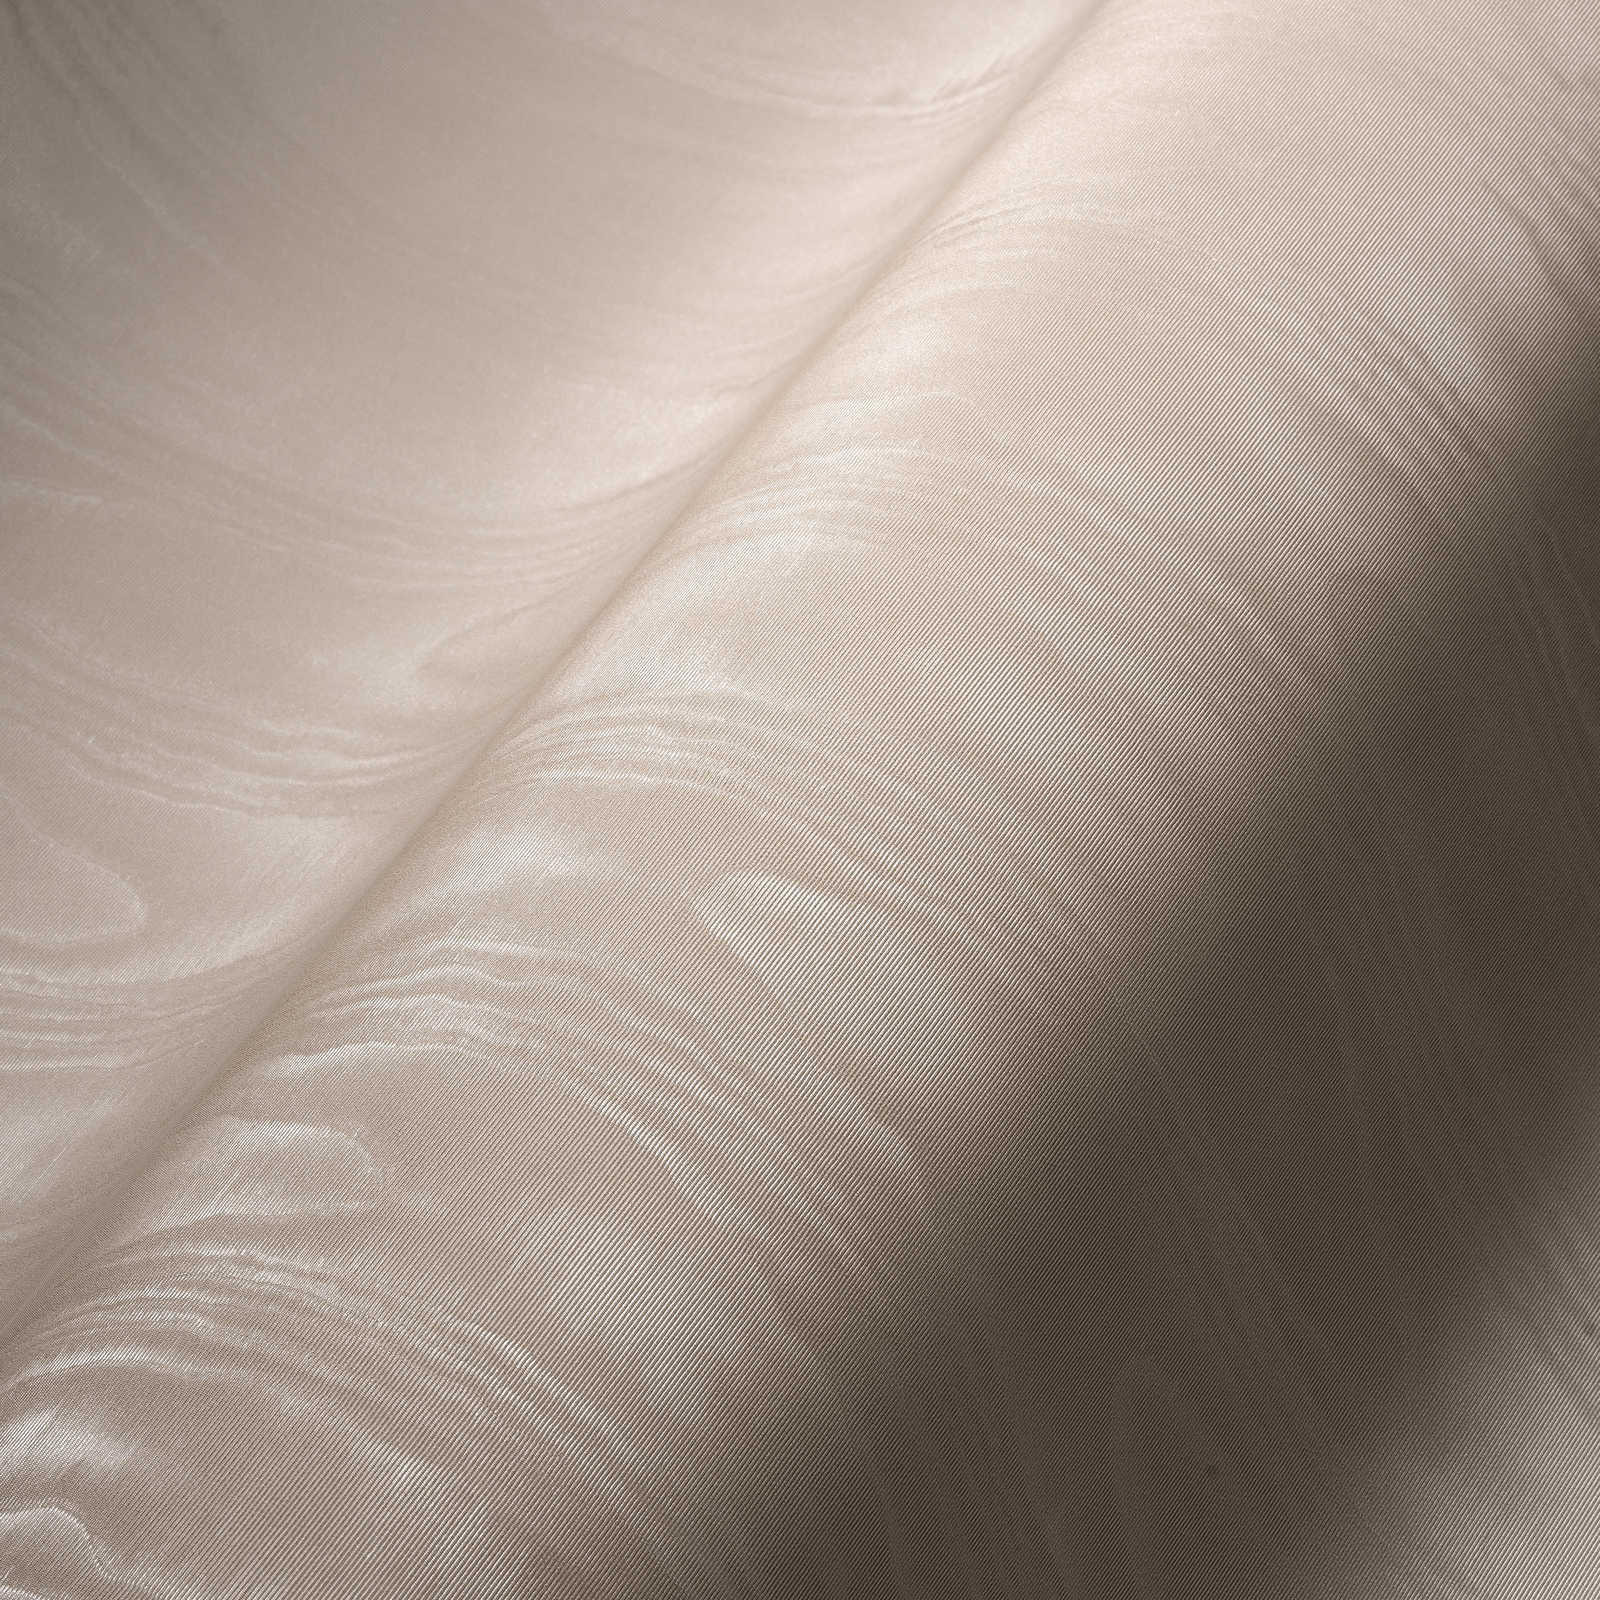             Crème vliesbehang moiré effect & textielstructuur
        